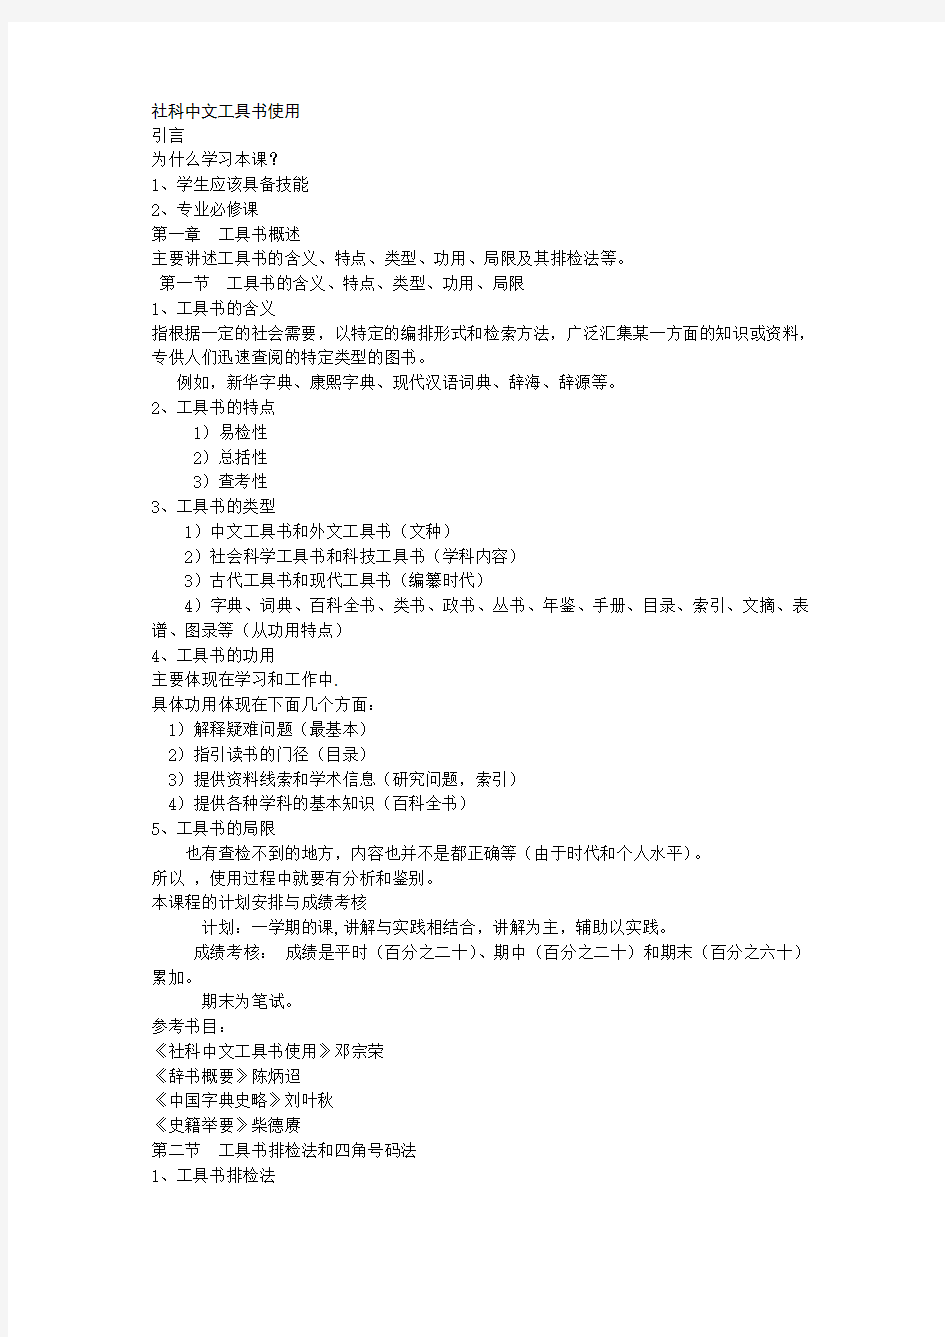 社科中文工具书使用教案